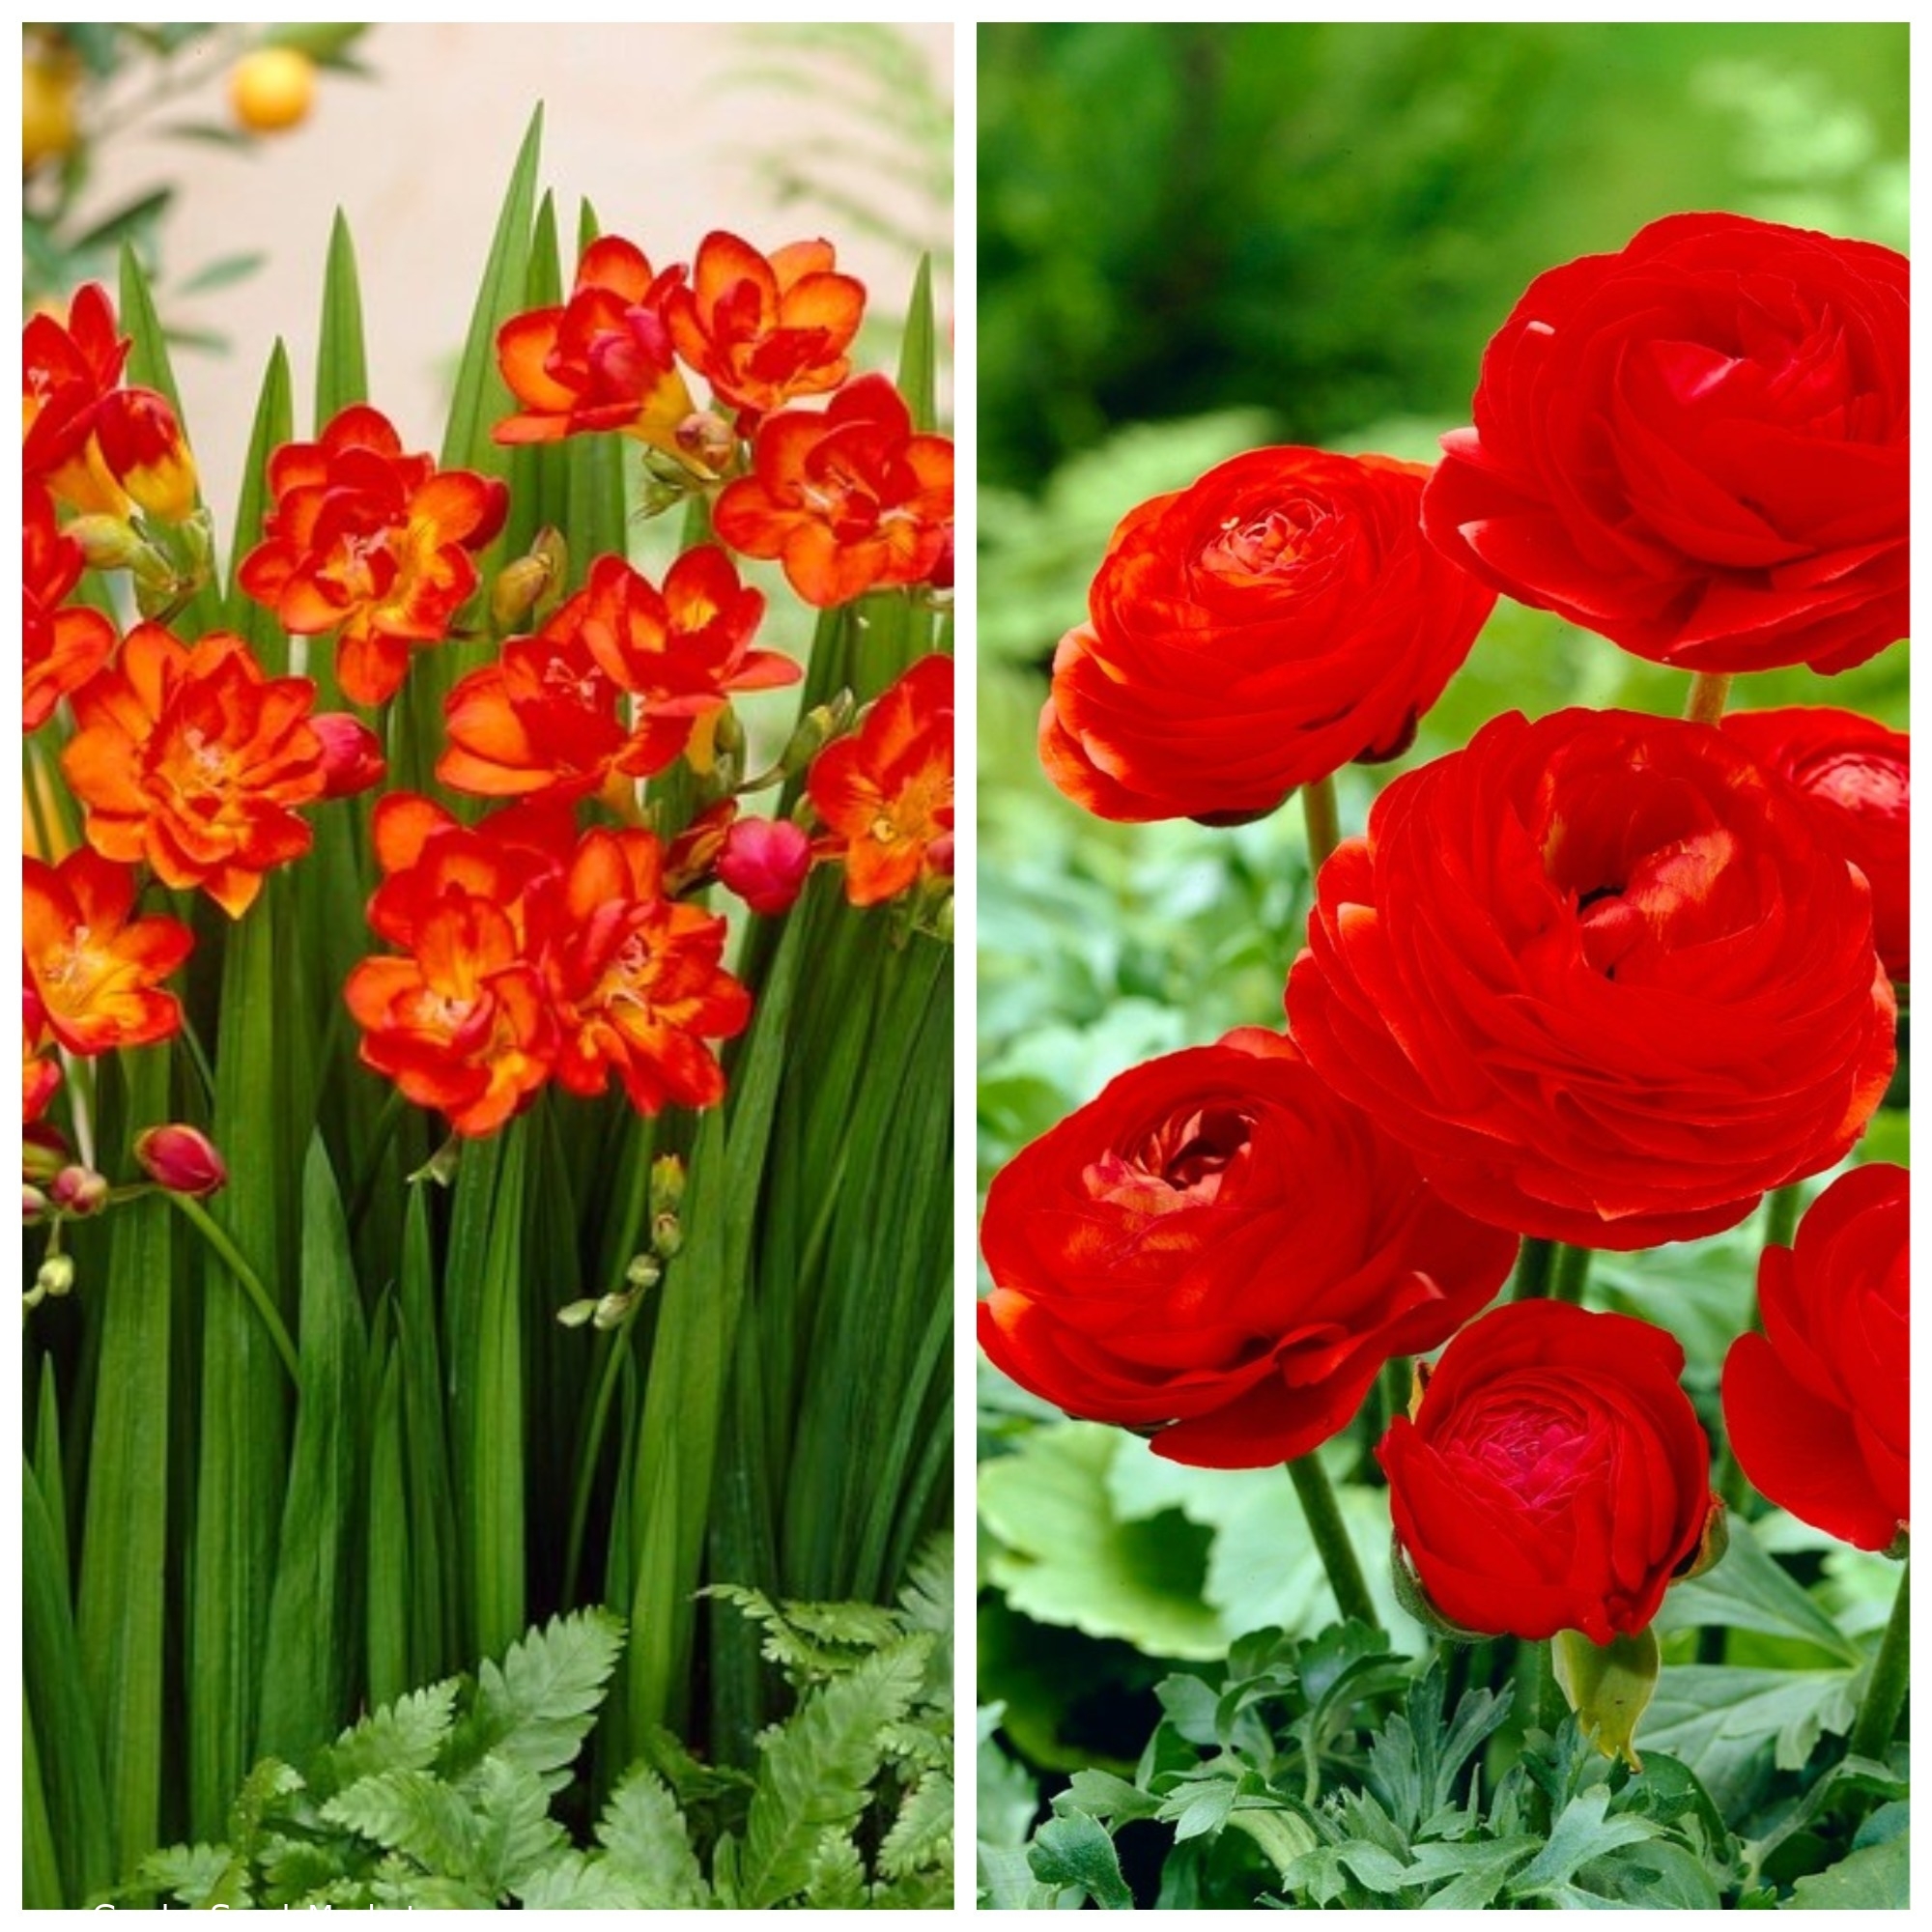 Rdeča harmonija - set dveh rdečih cvetočih rastlinskih vrst - 100 kosov. -  – Garden Seeds Market | Brezplačna dostava